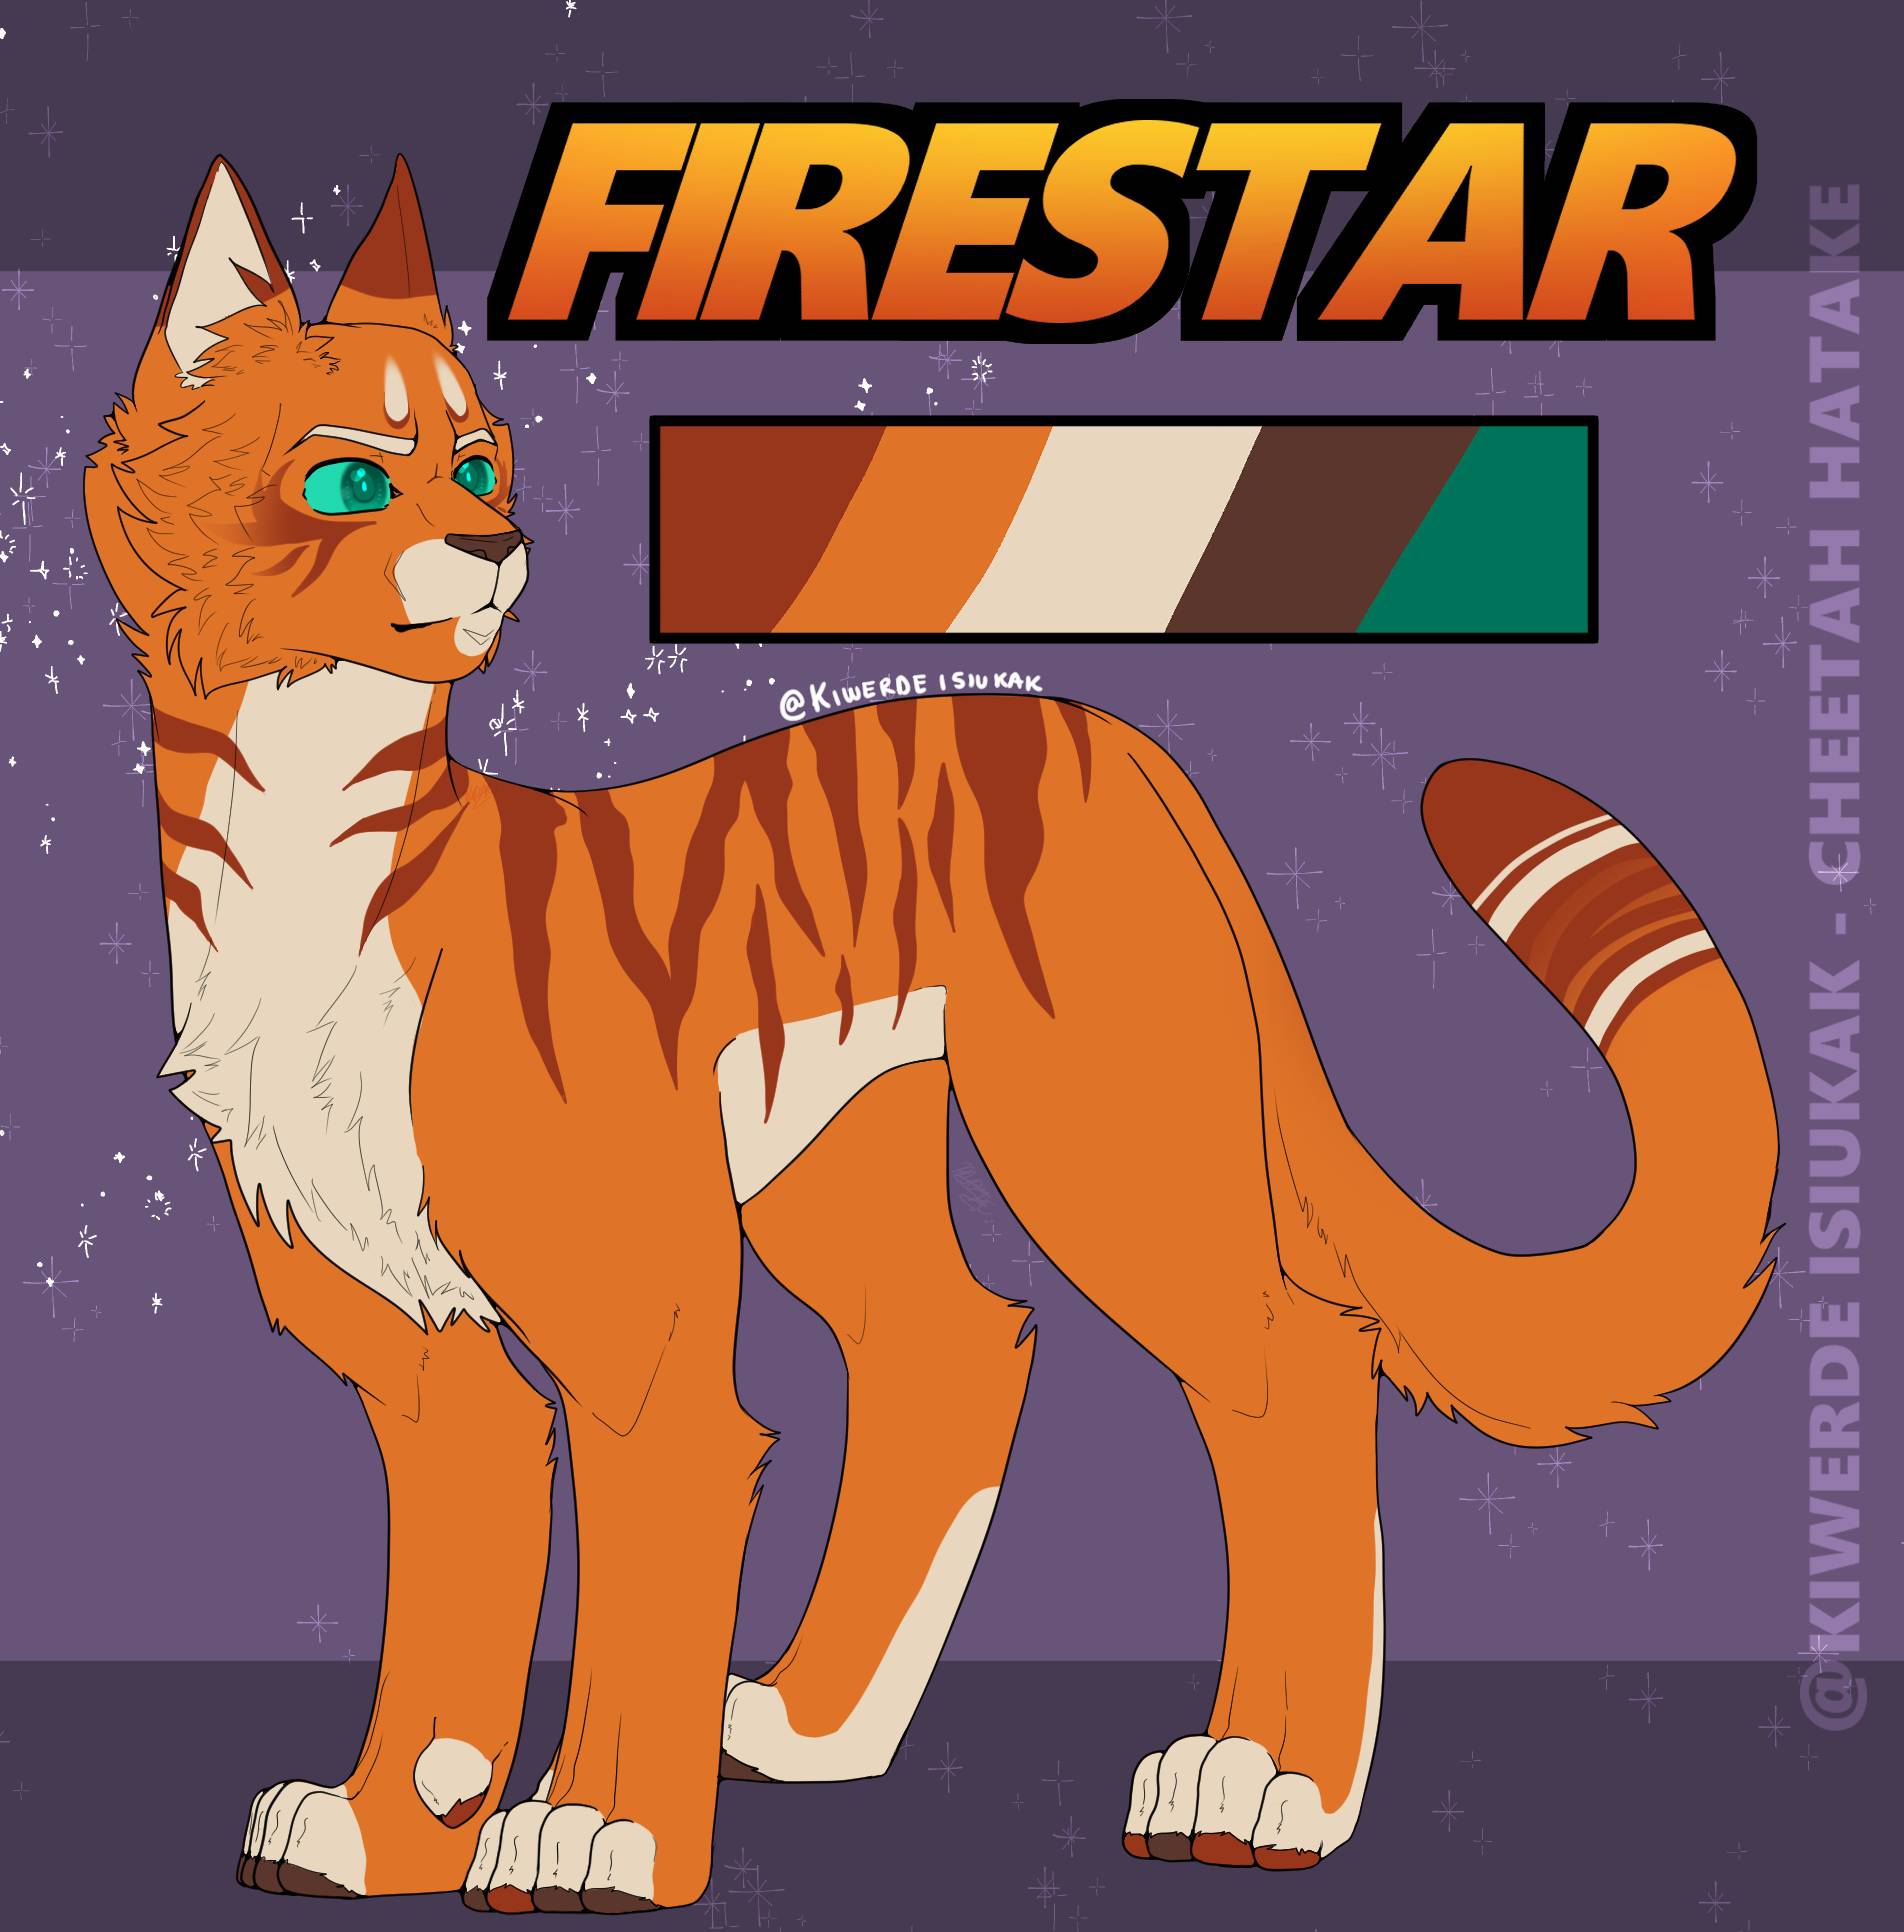 Warrior Cats Designs -- Firestar by Pikayu9 on DeviantArt